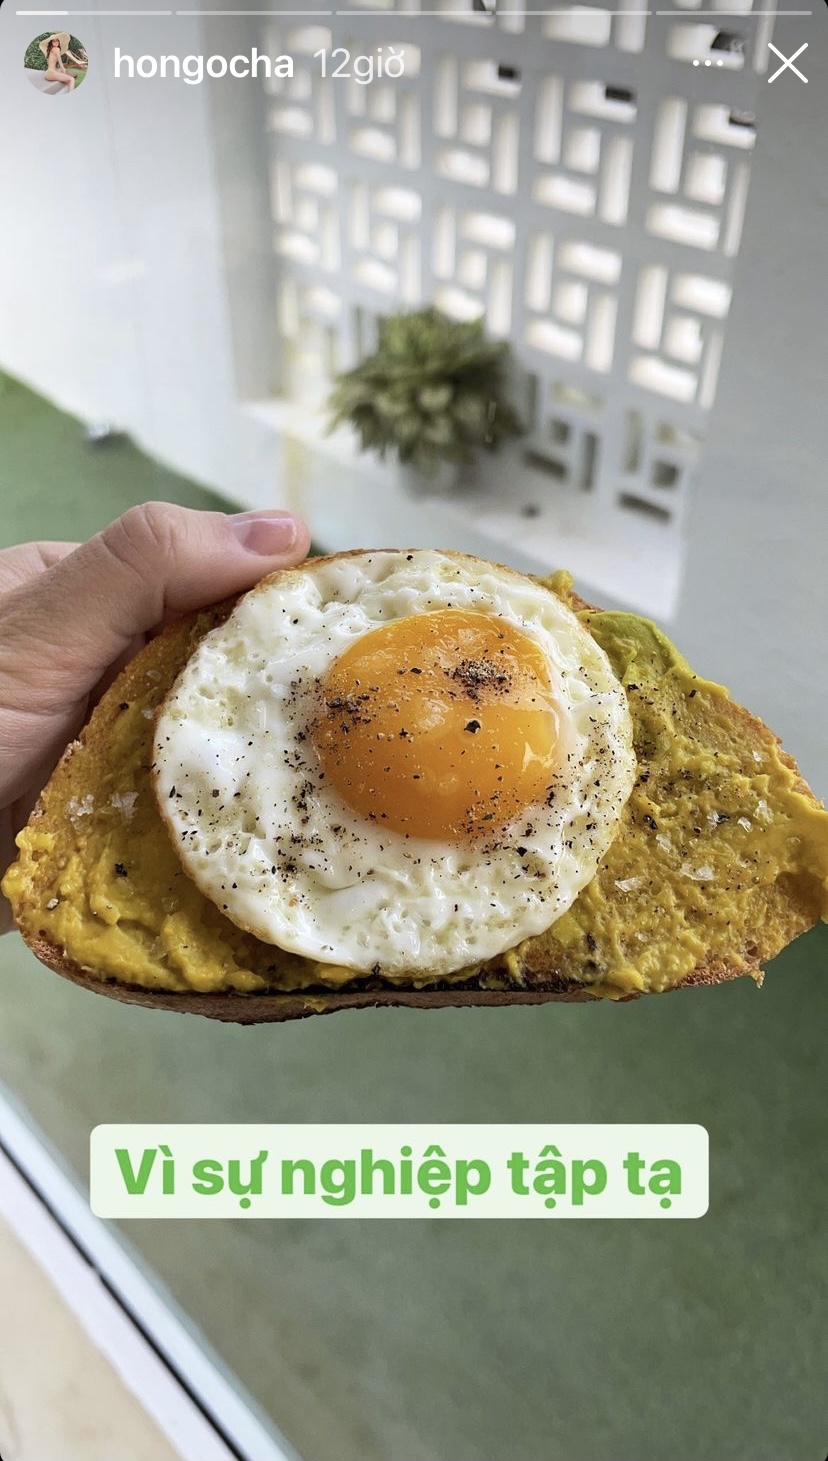 Vì sự nghiệp tập tạ nên Hồ Ngọc Hà đã bắt đầu buổi sáng bằng một lát bánh mì ăn kèm trứng ốp-la.